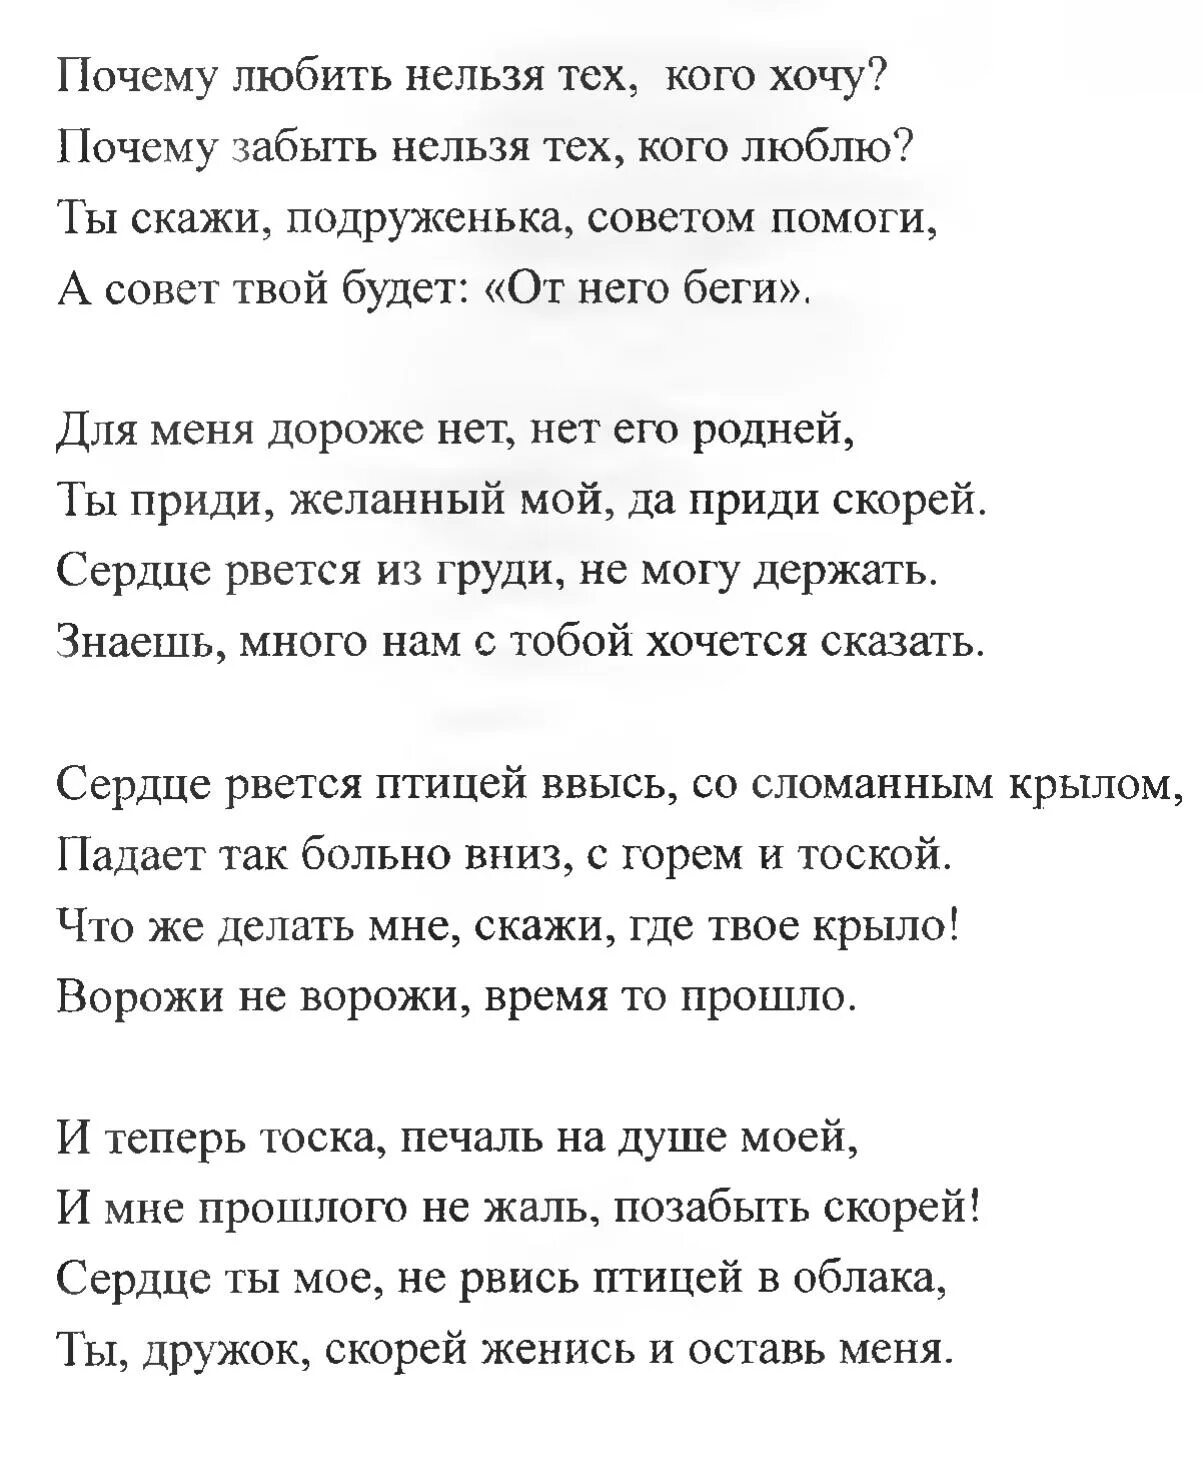 Ворожи не ворожи Кадышева текст. Текст песни ворожи не ворожи.